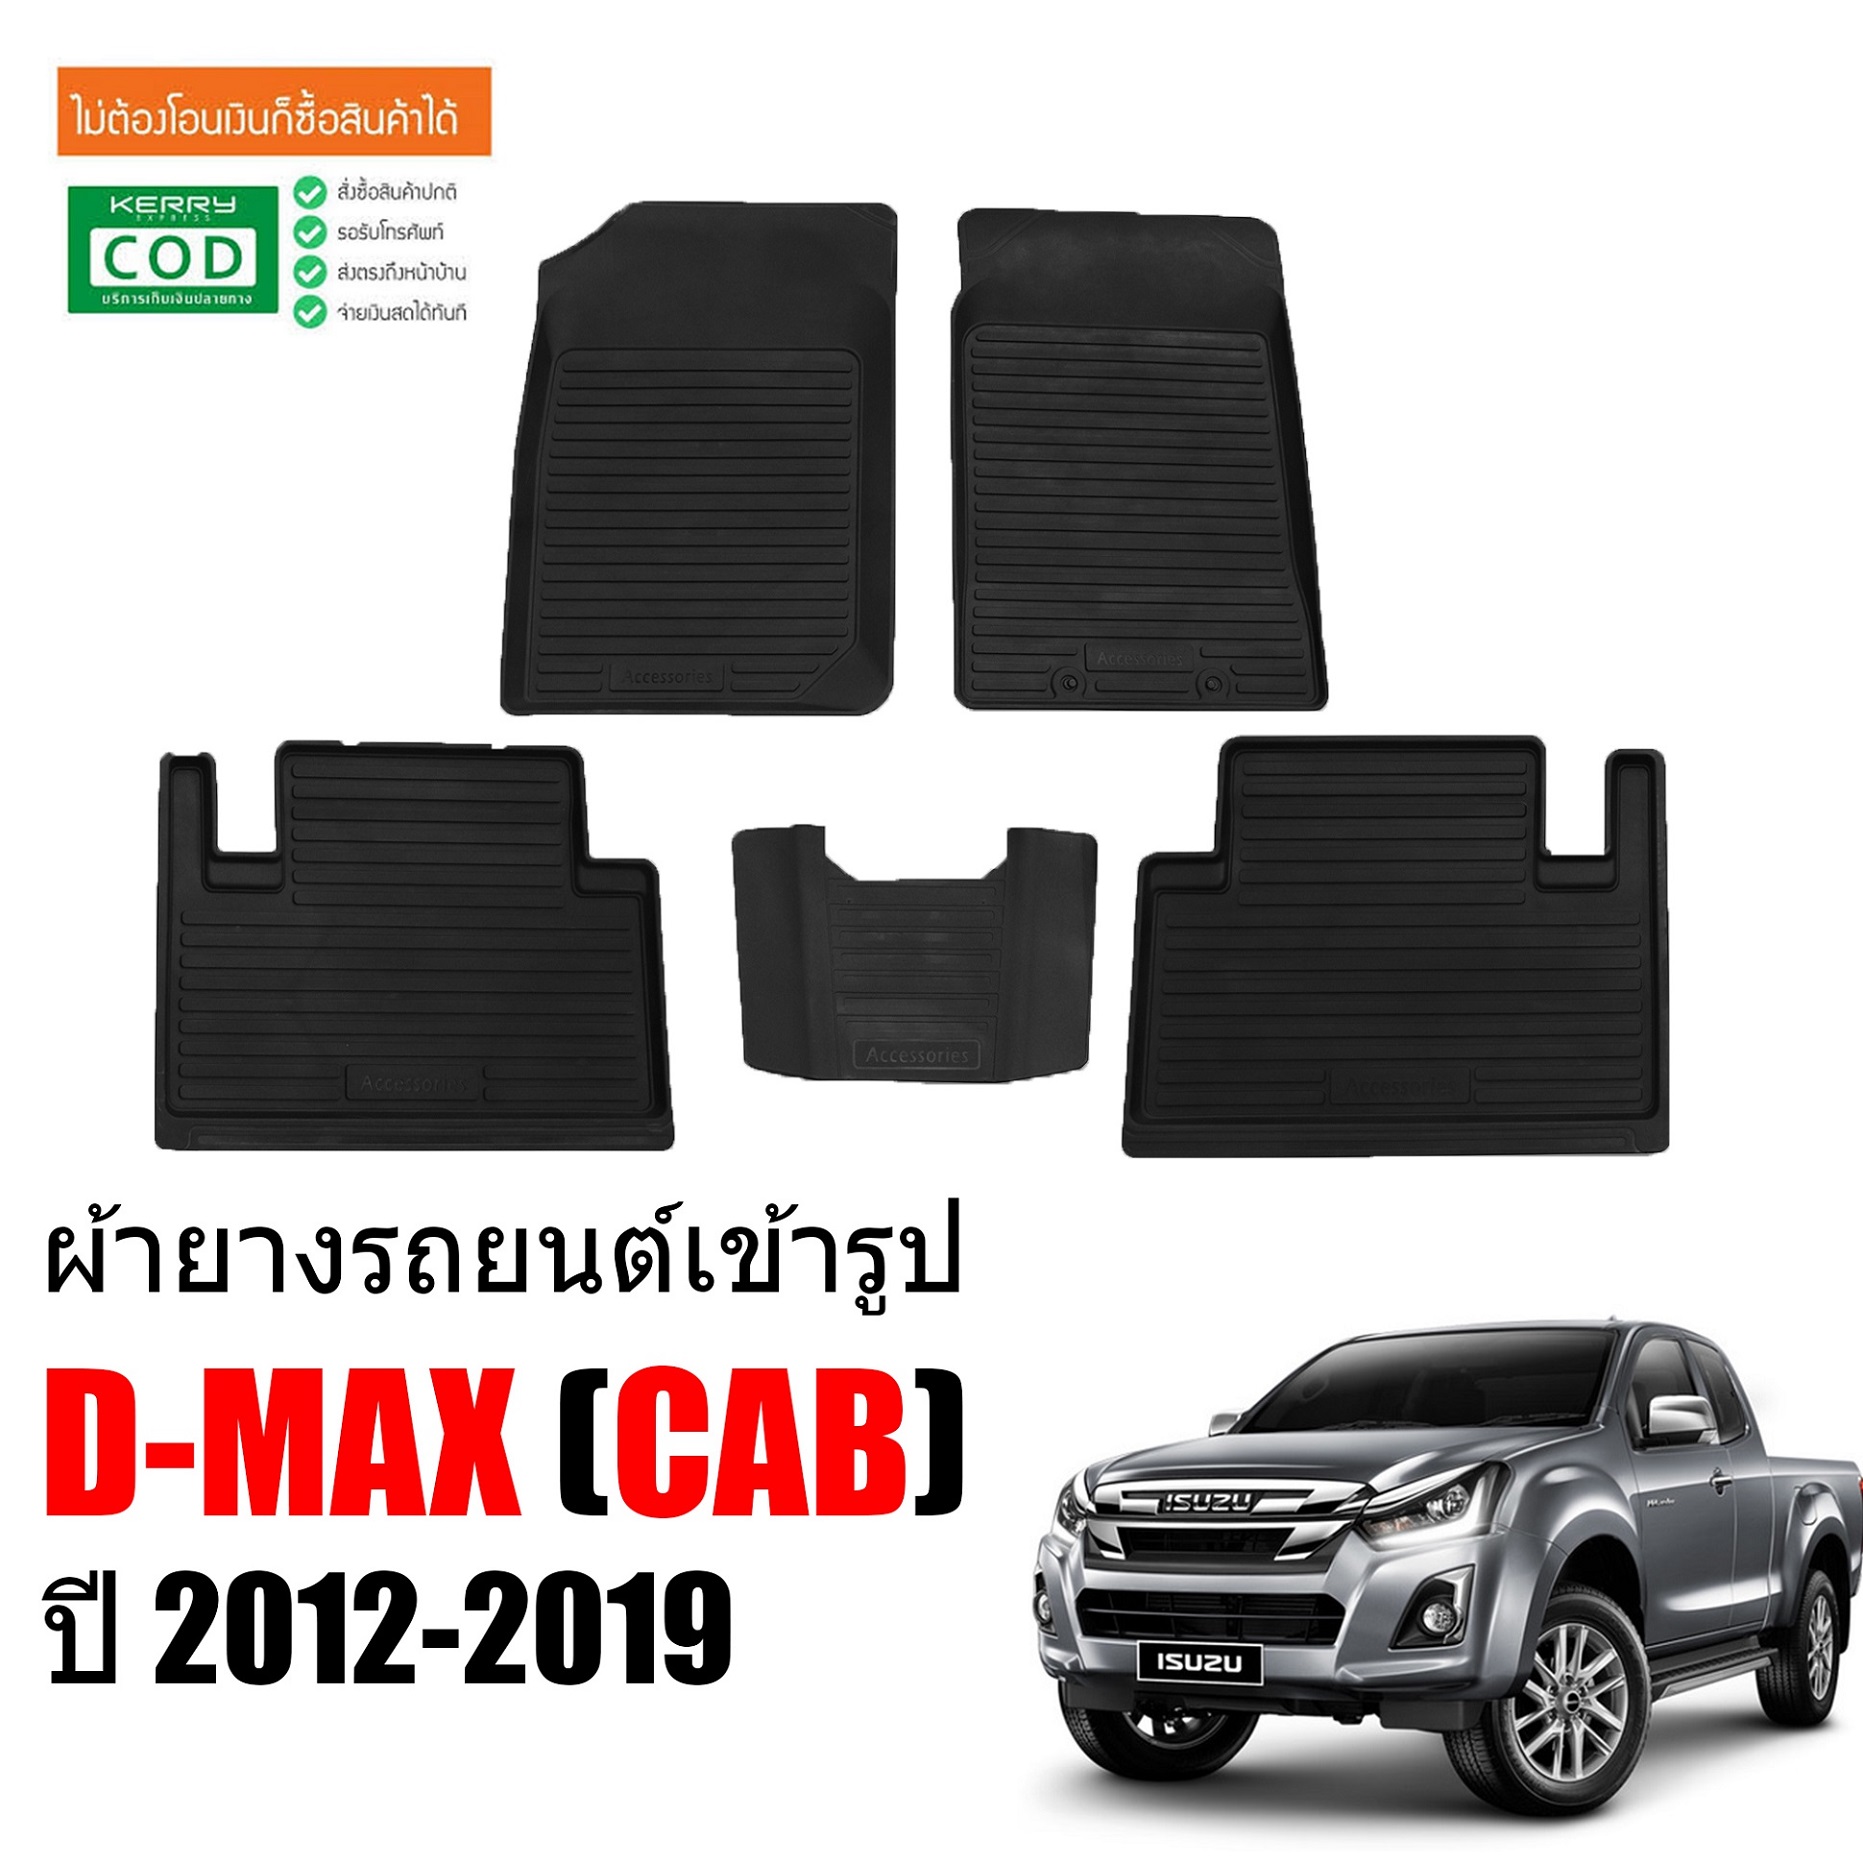 ผ้ายางรถยนต์เข้ารูป ISUZU D MAX (CAB) ปี2012-2019 (ก่อนโฉมปัจจุบัน) พรมปูพื้นรถ แผ่นยางปูพื้นรถ ถาดยางปูพื้นรถ ผ้ายาง พรมรองพื้นรถ พรมรถยนต์ DMAX พรม